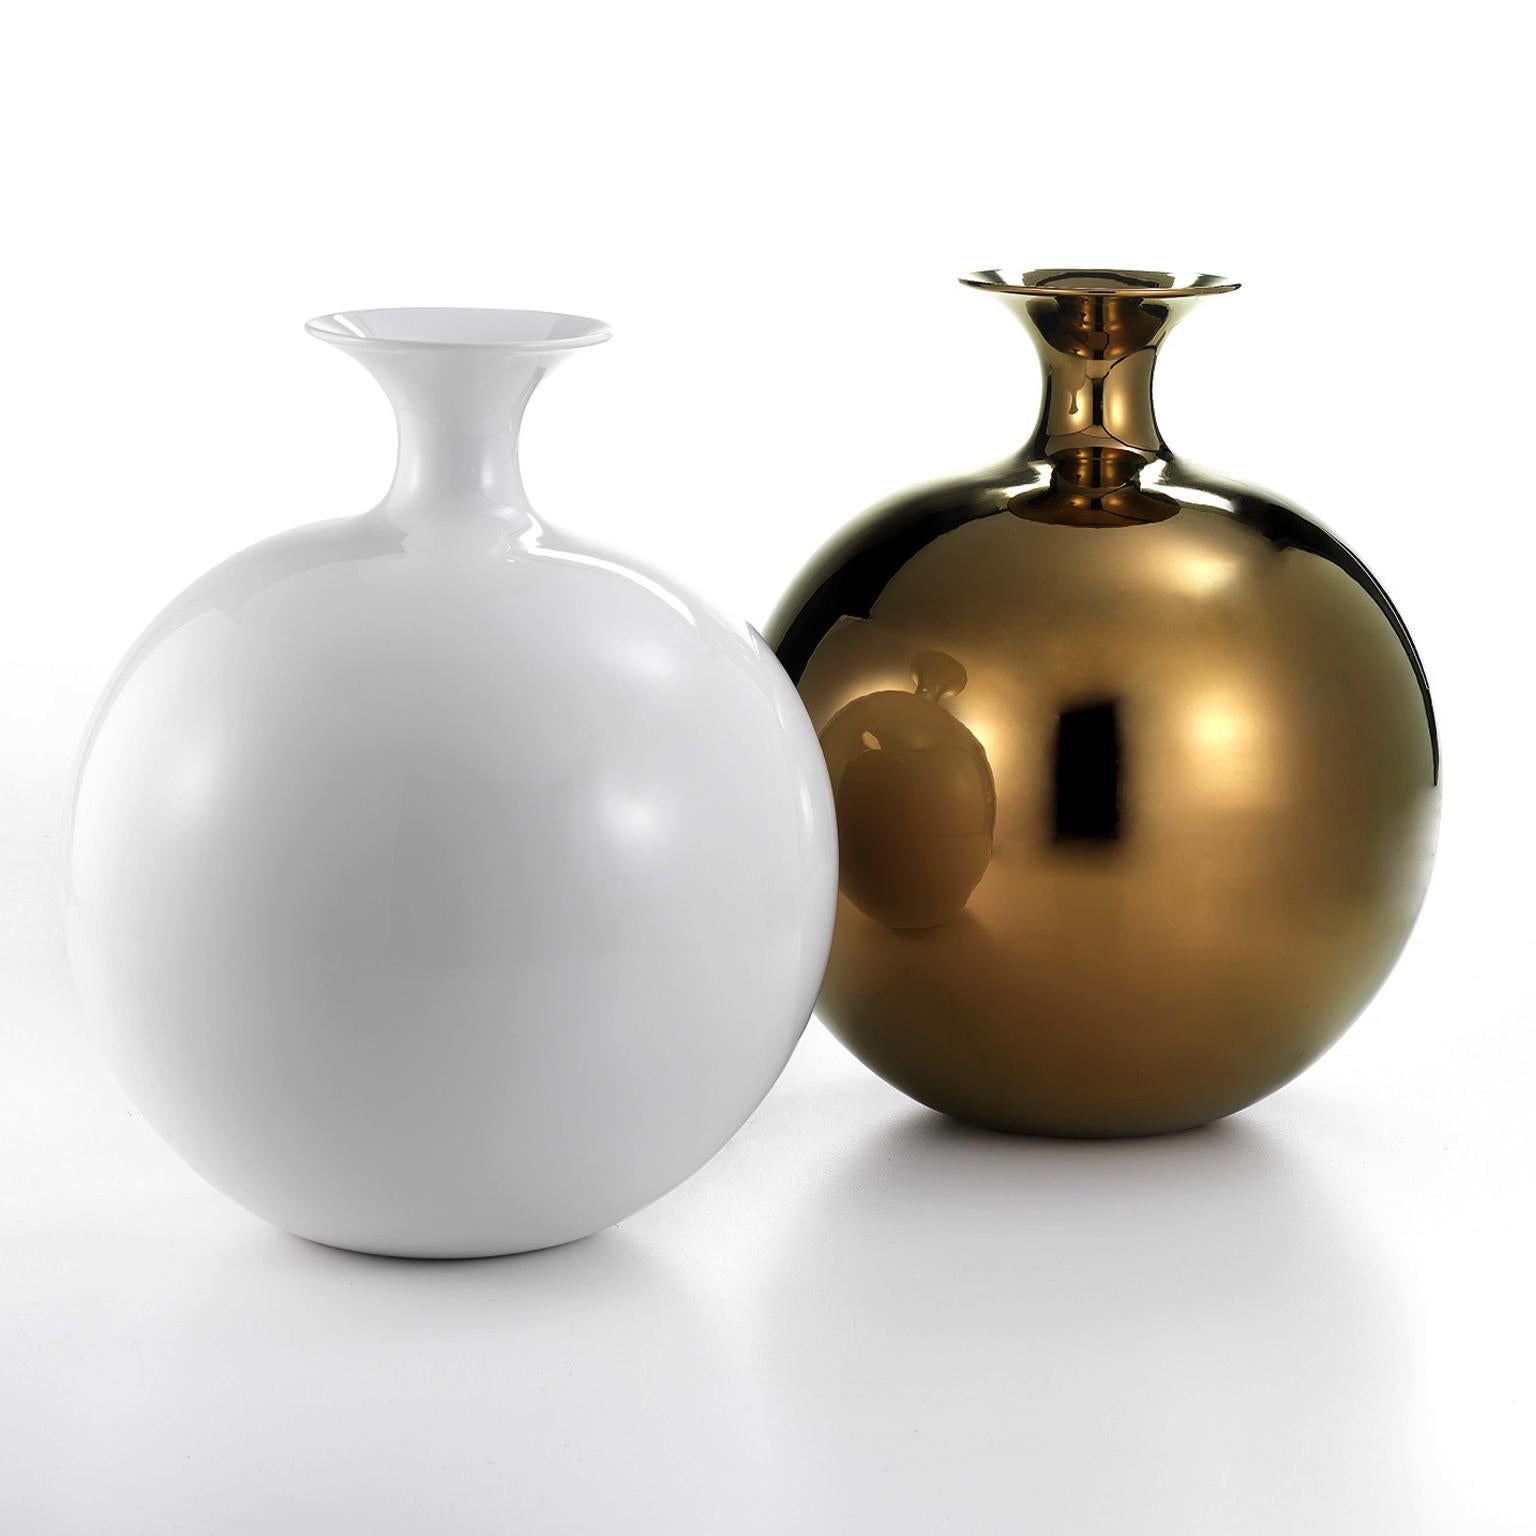 Ceramic vase Moon
cod. SF001
white glazed

Measures: 
Height 60.0 cm,  
Diameter. 55.0 cm.

   